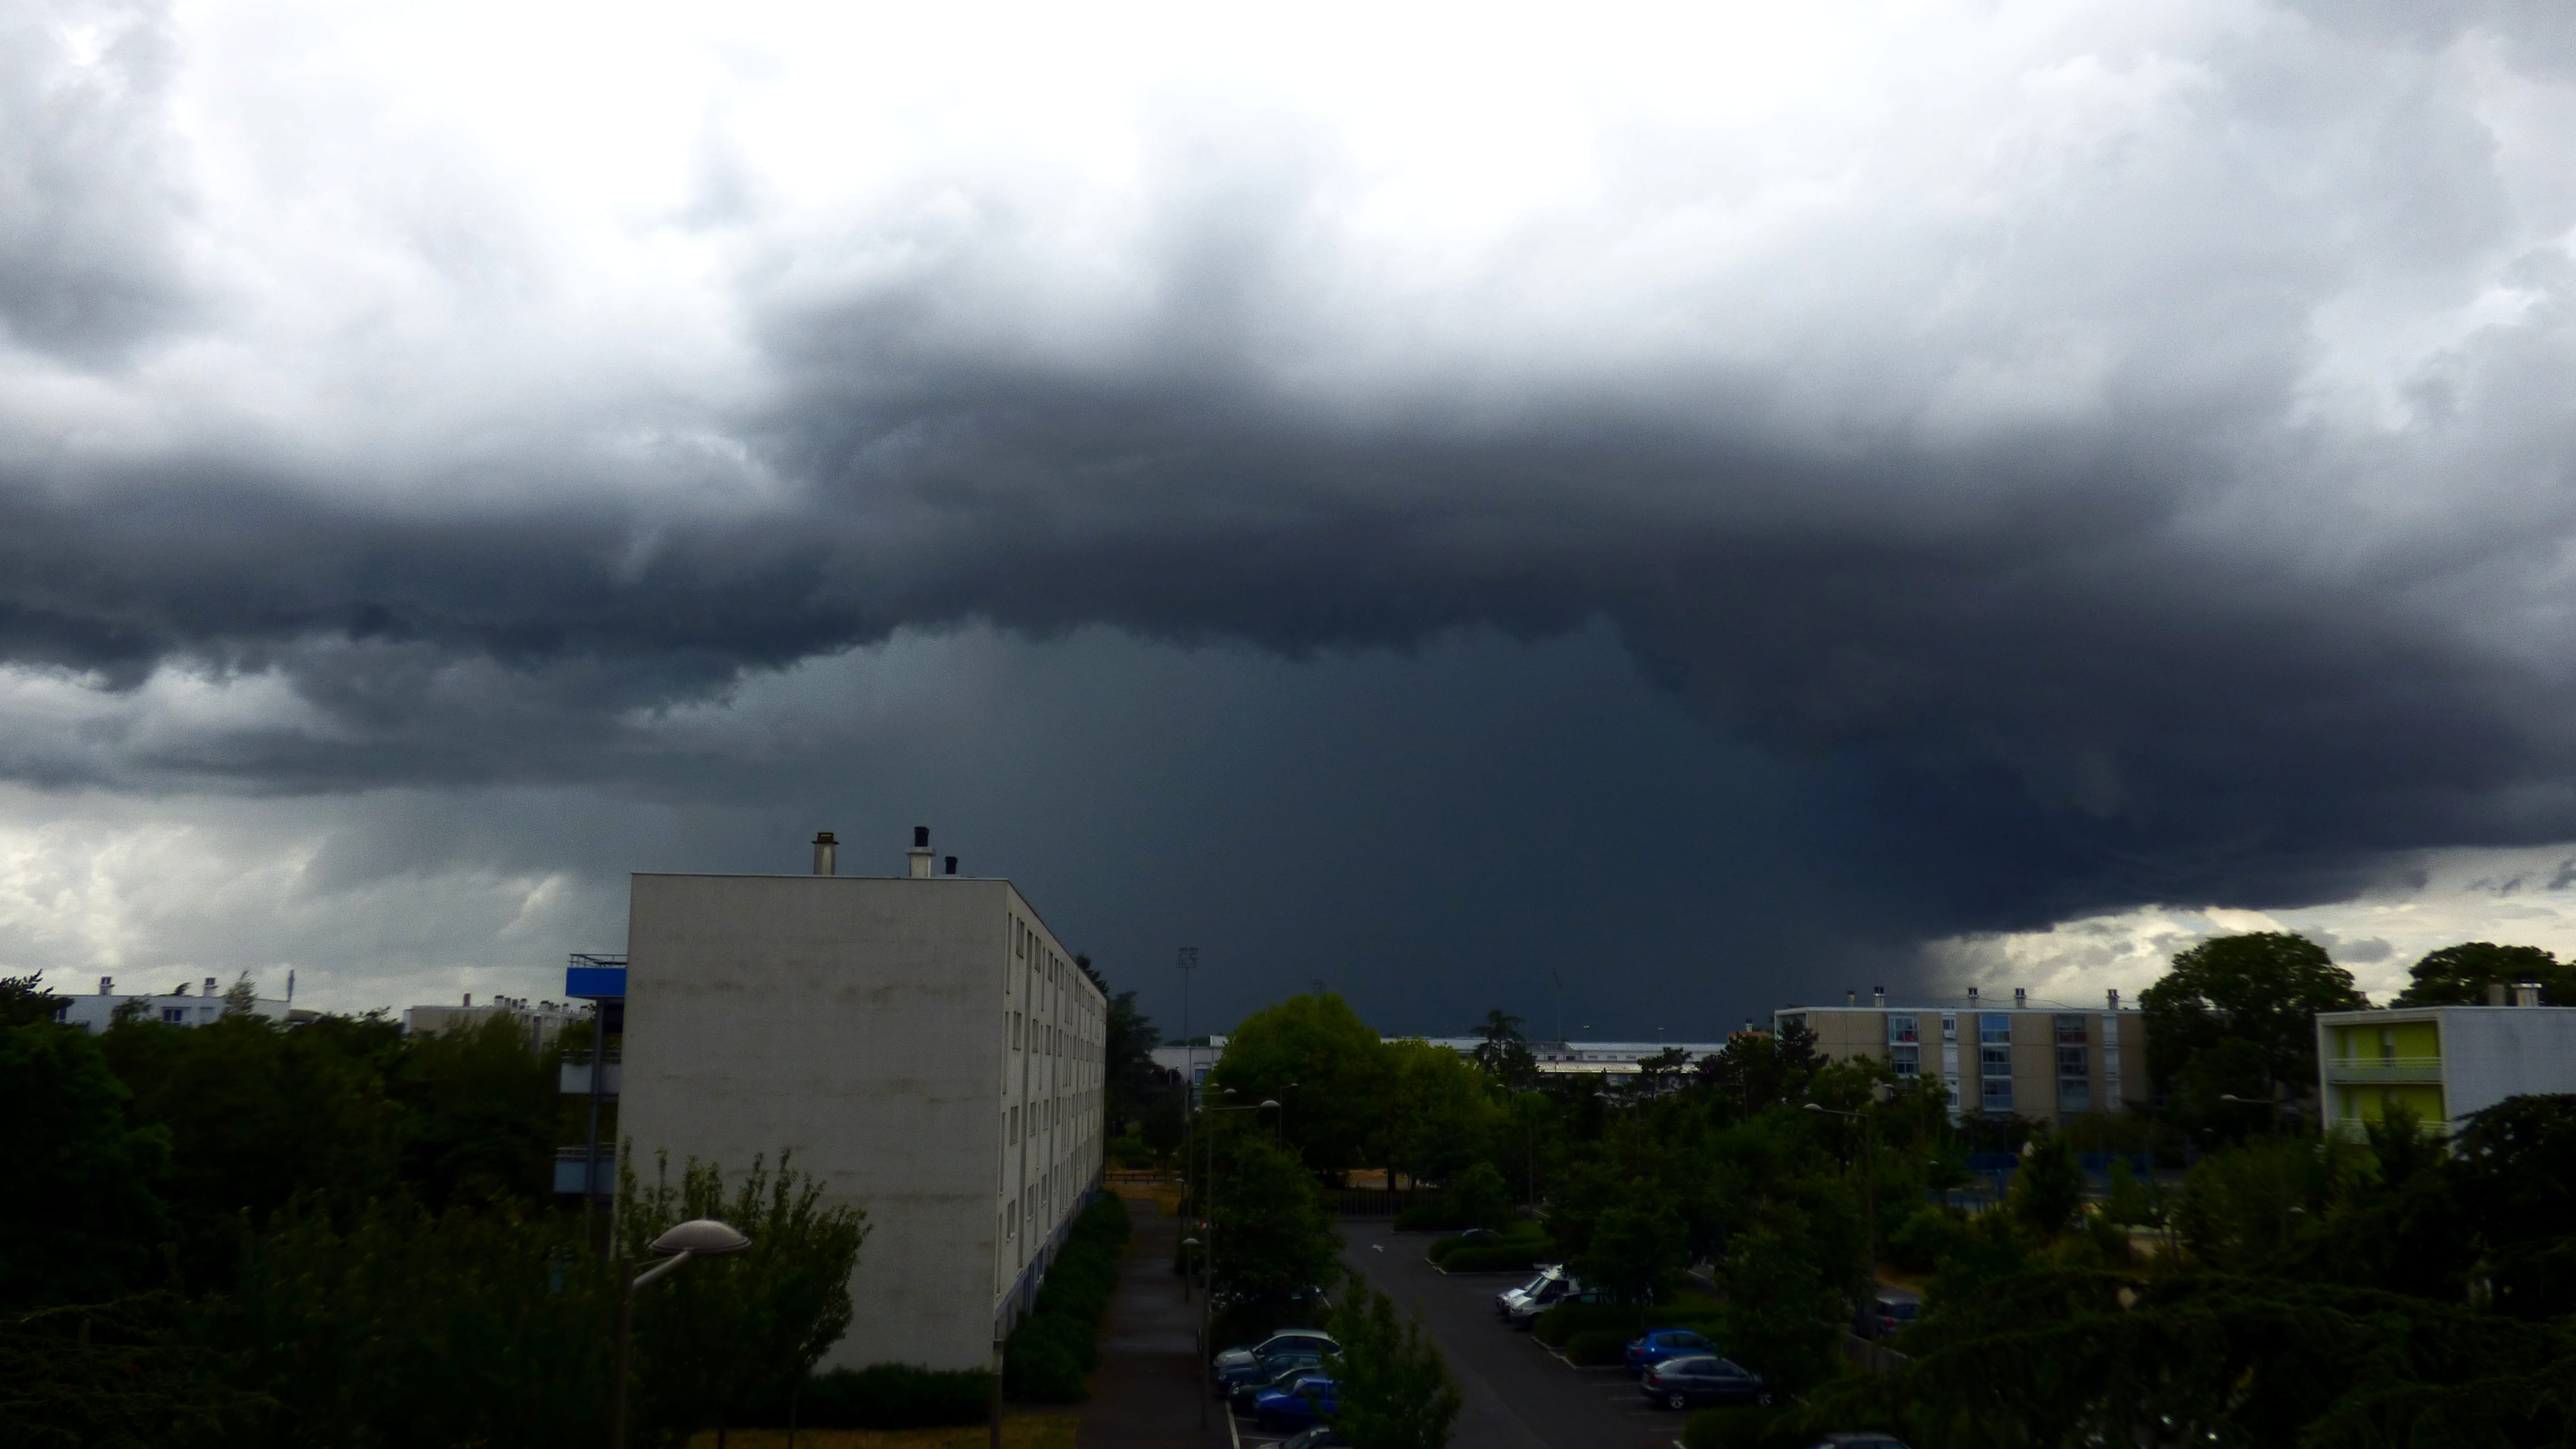 Cellule orageuse à l'ouest de la ville de Niort avec de fortes précipitations et quelques éclairs. - 12/06/2020 15:27 - Damien Melaye